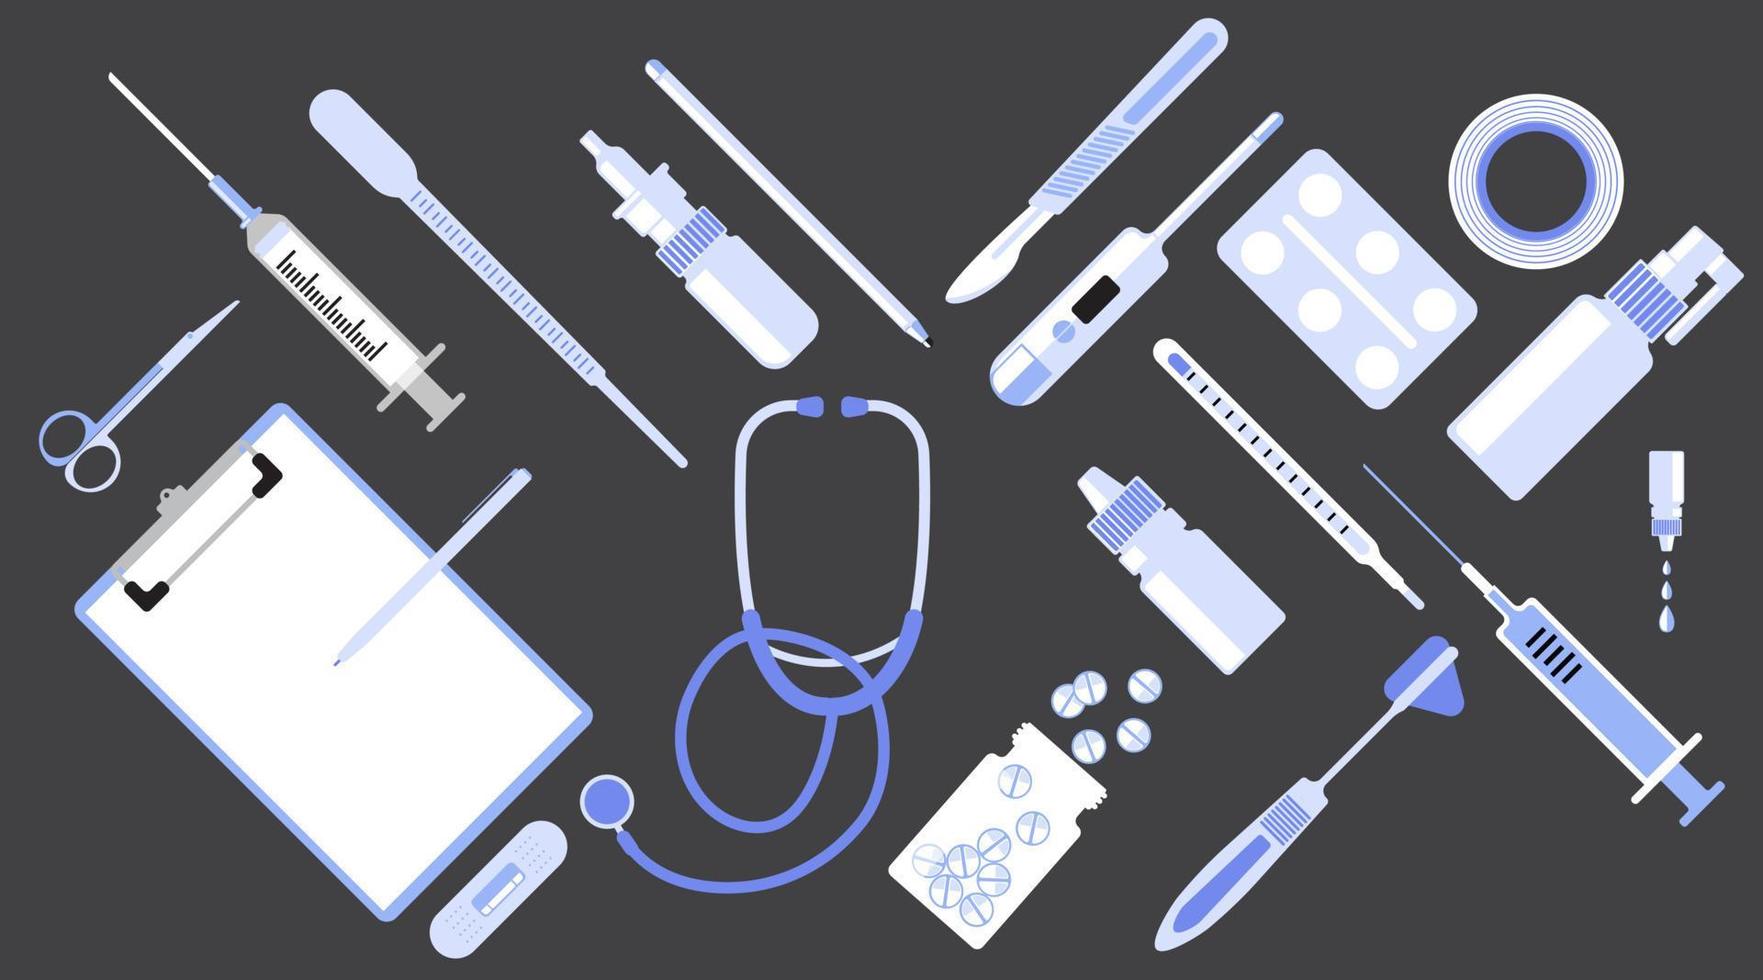 vecteur de jeu simple d'équipement médical, dentaire, pilule, conception plate de vaccin